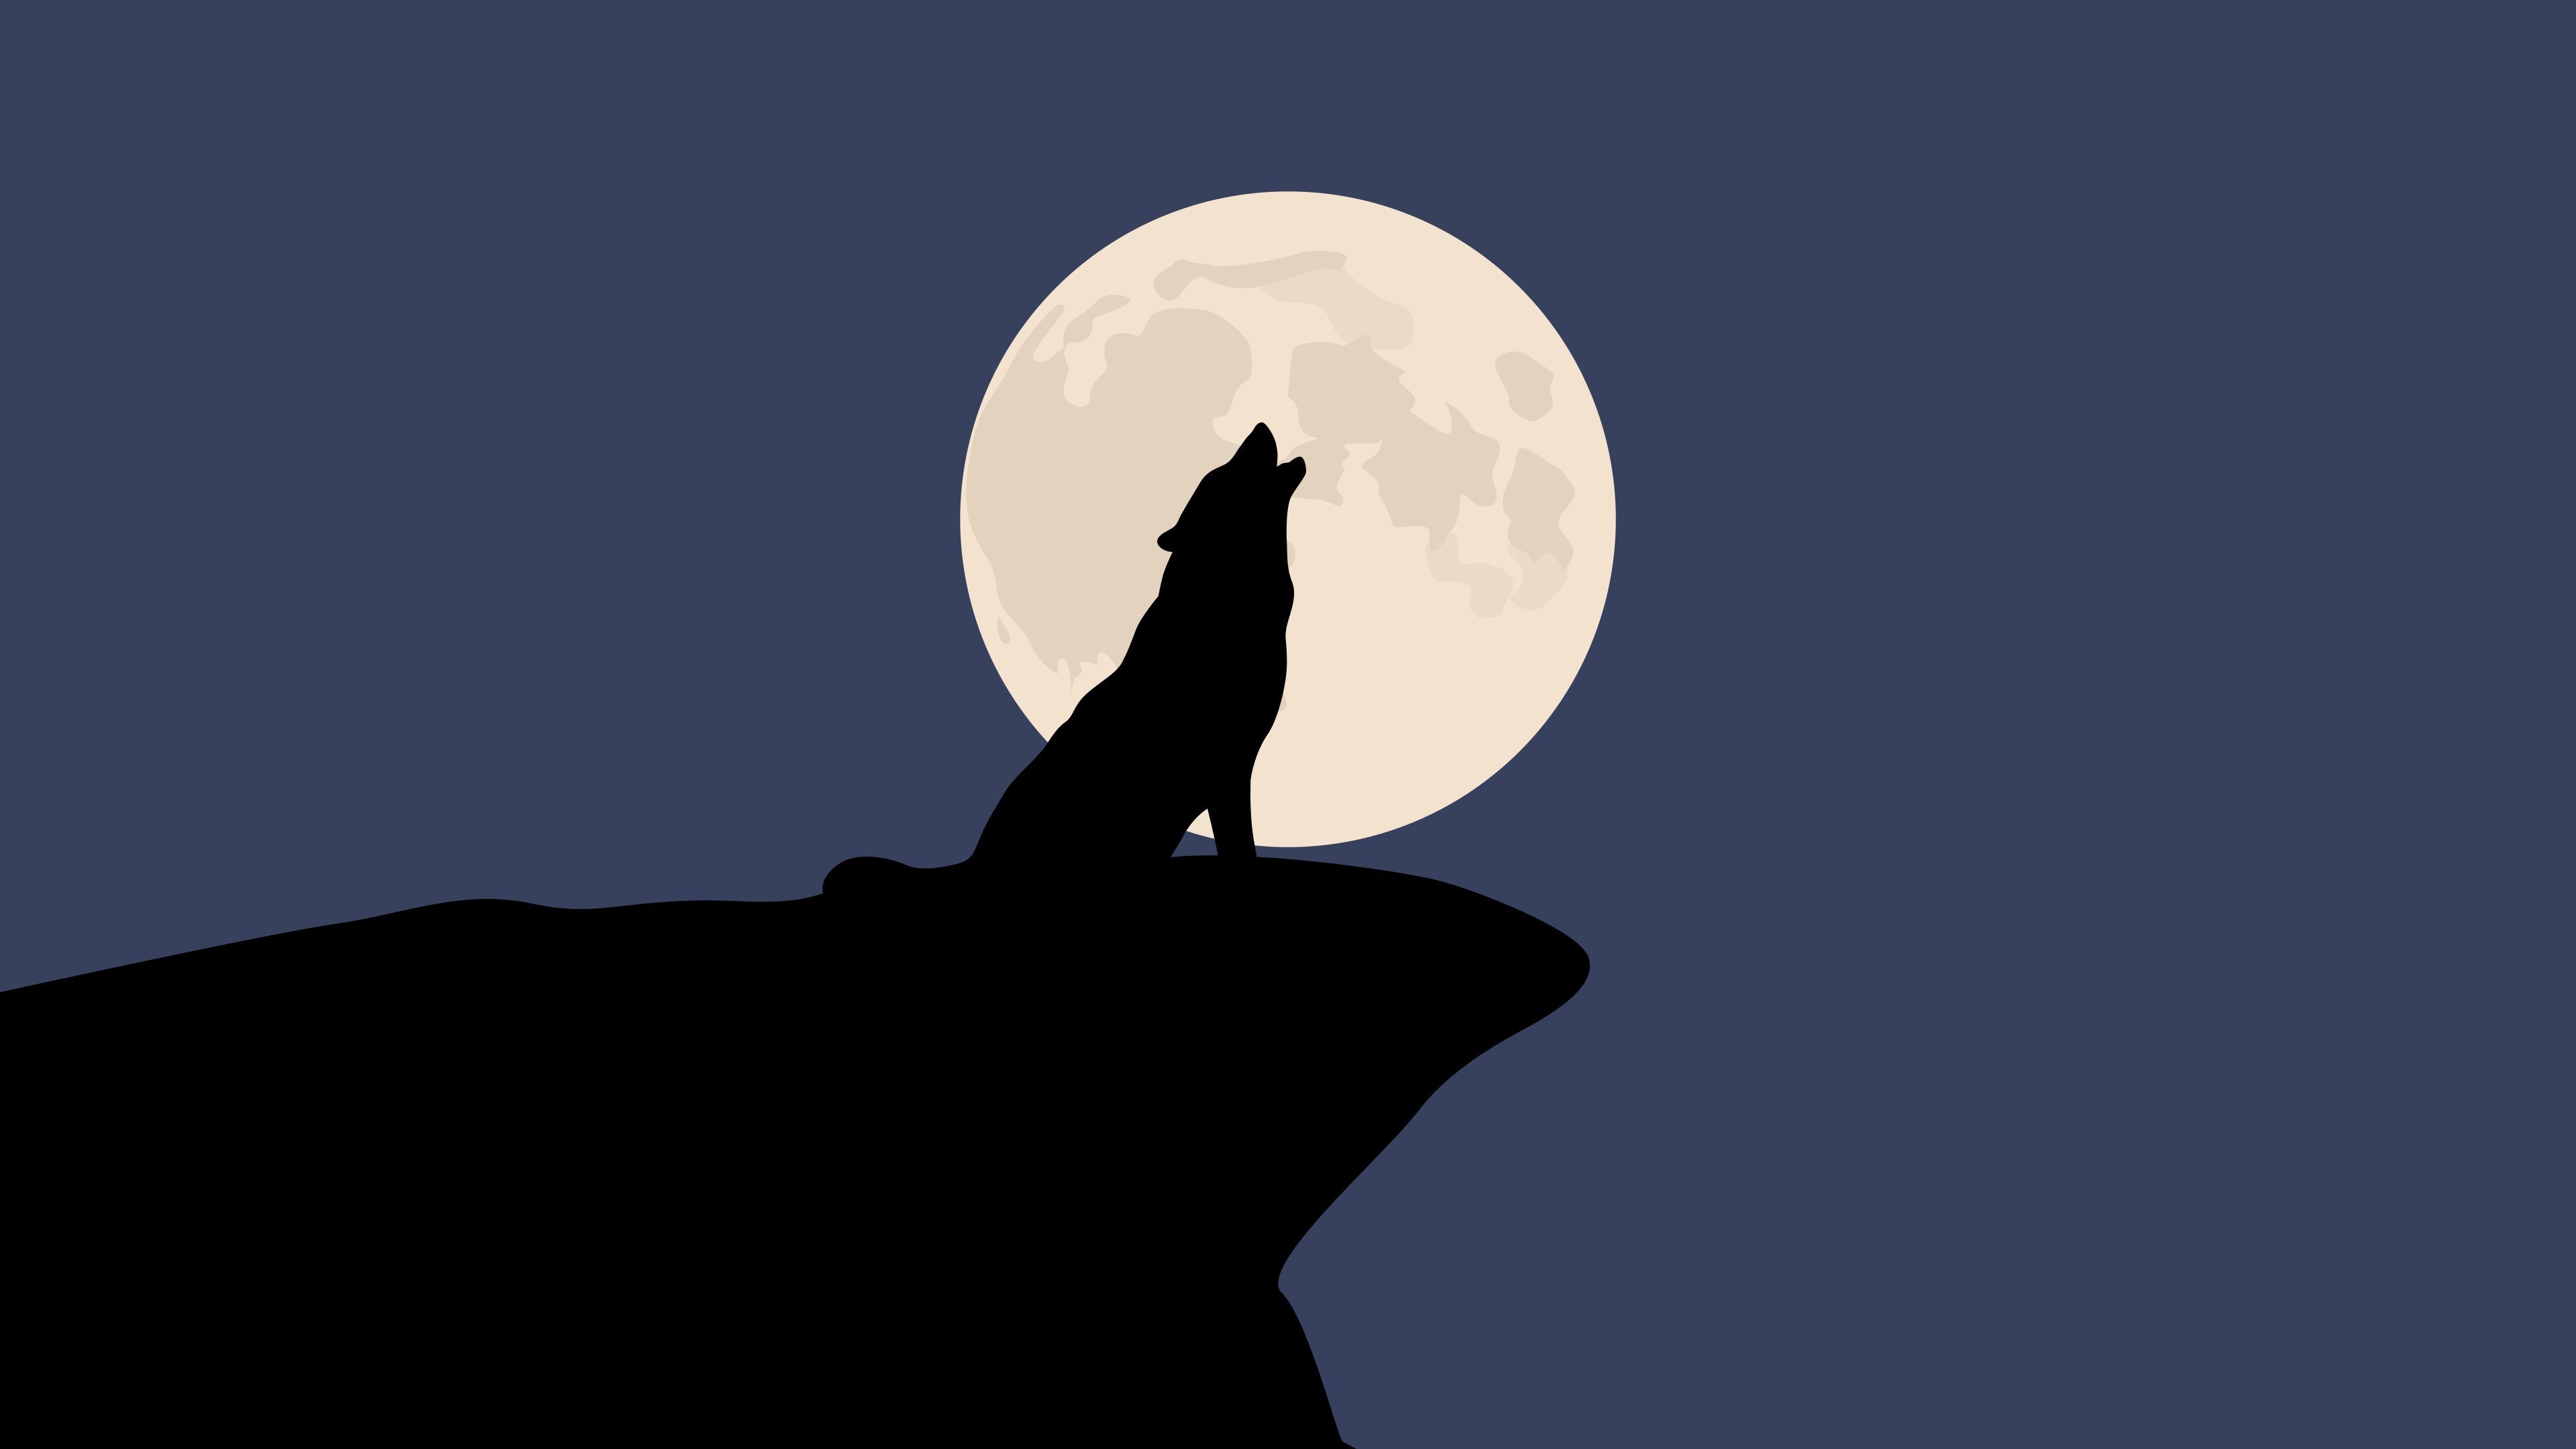 wolf wallpaper,full moon,light,sky,celestial event,silhouette